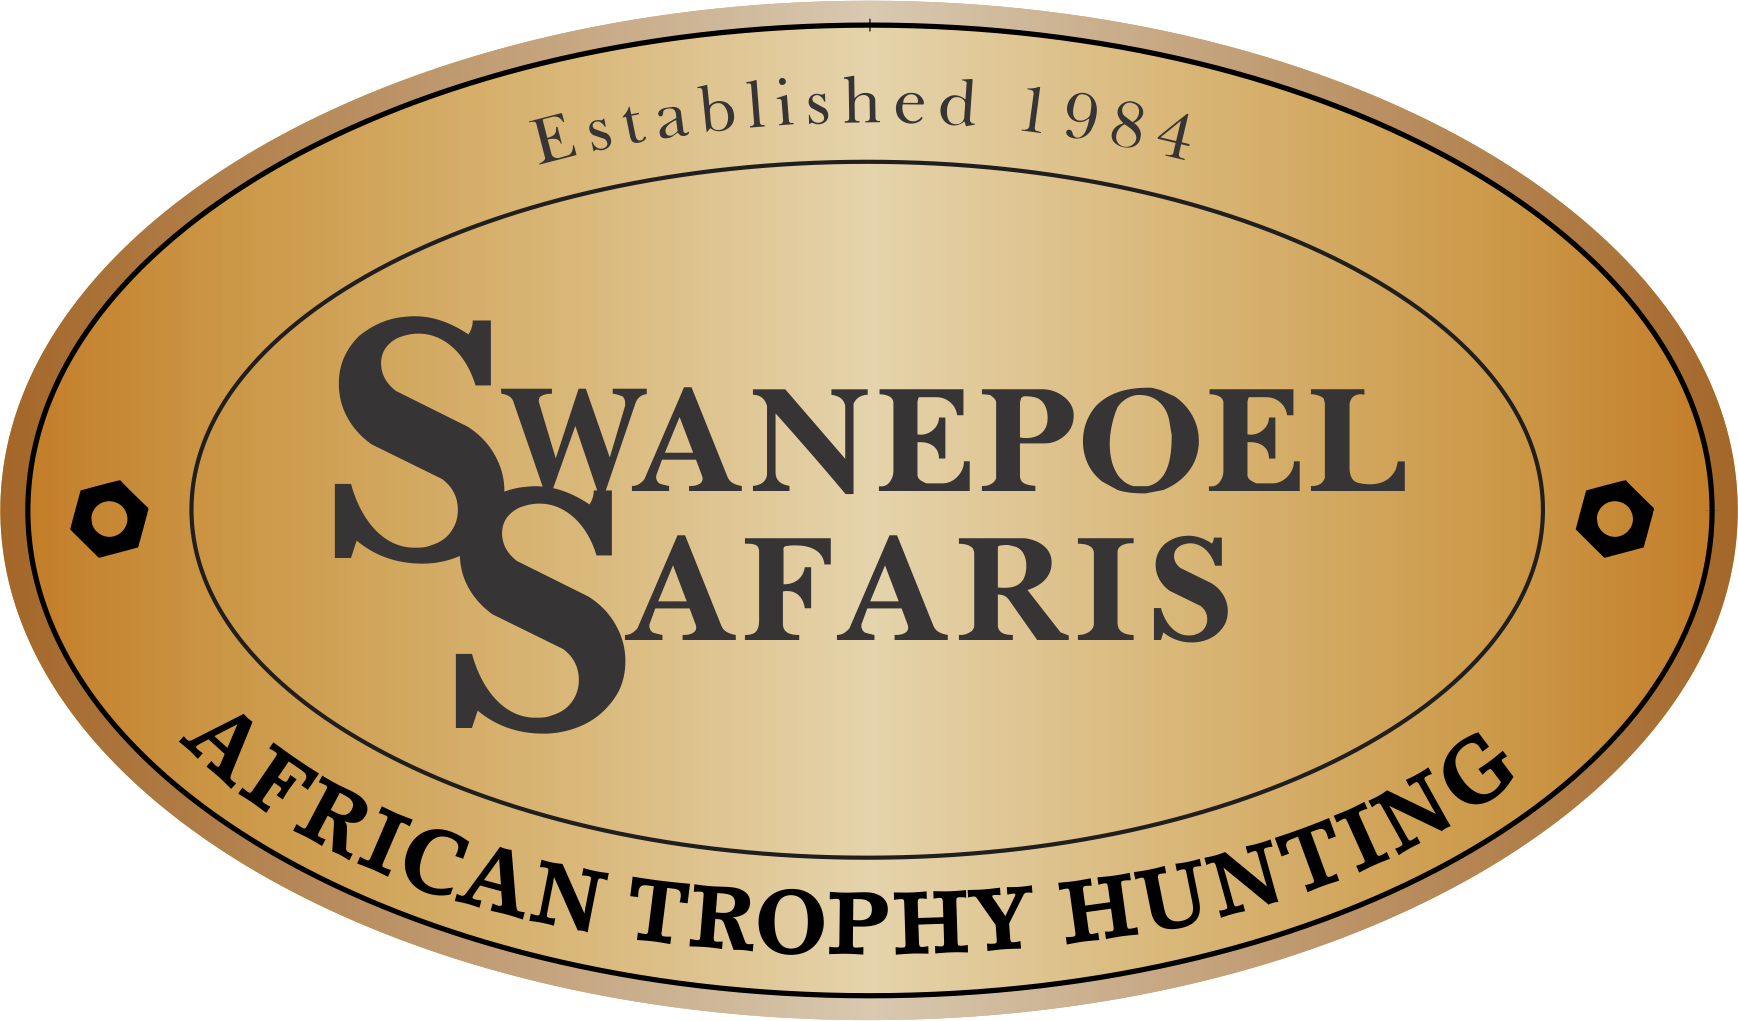 Swanepoel Safari